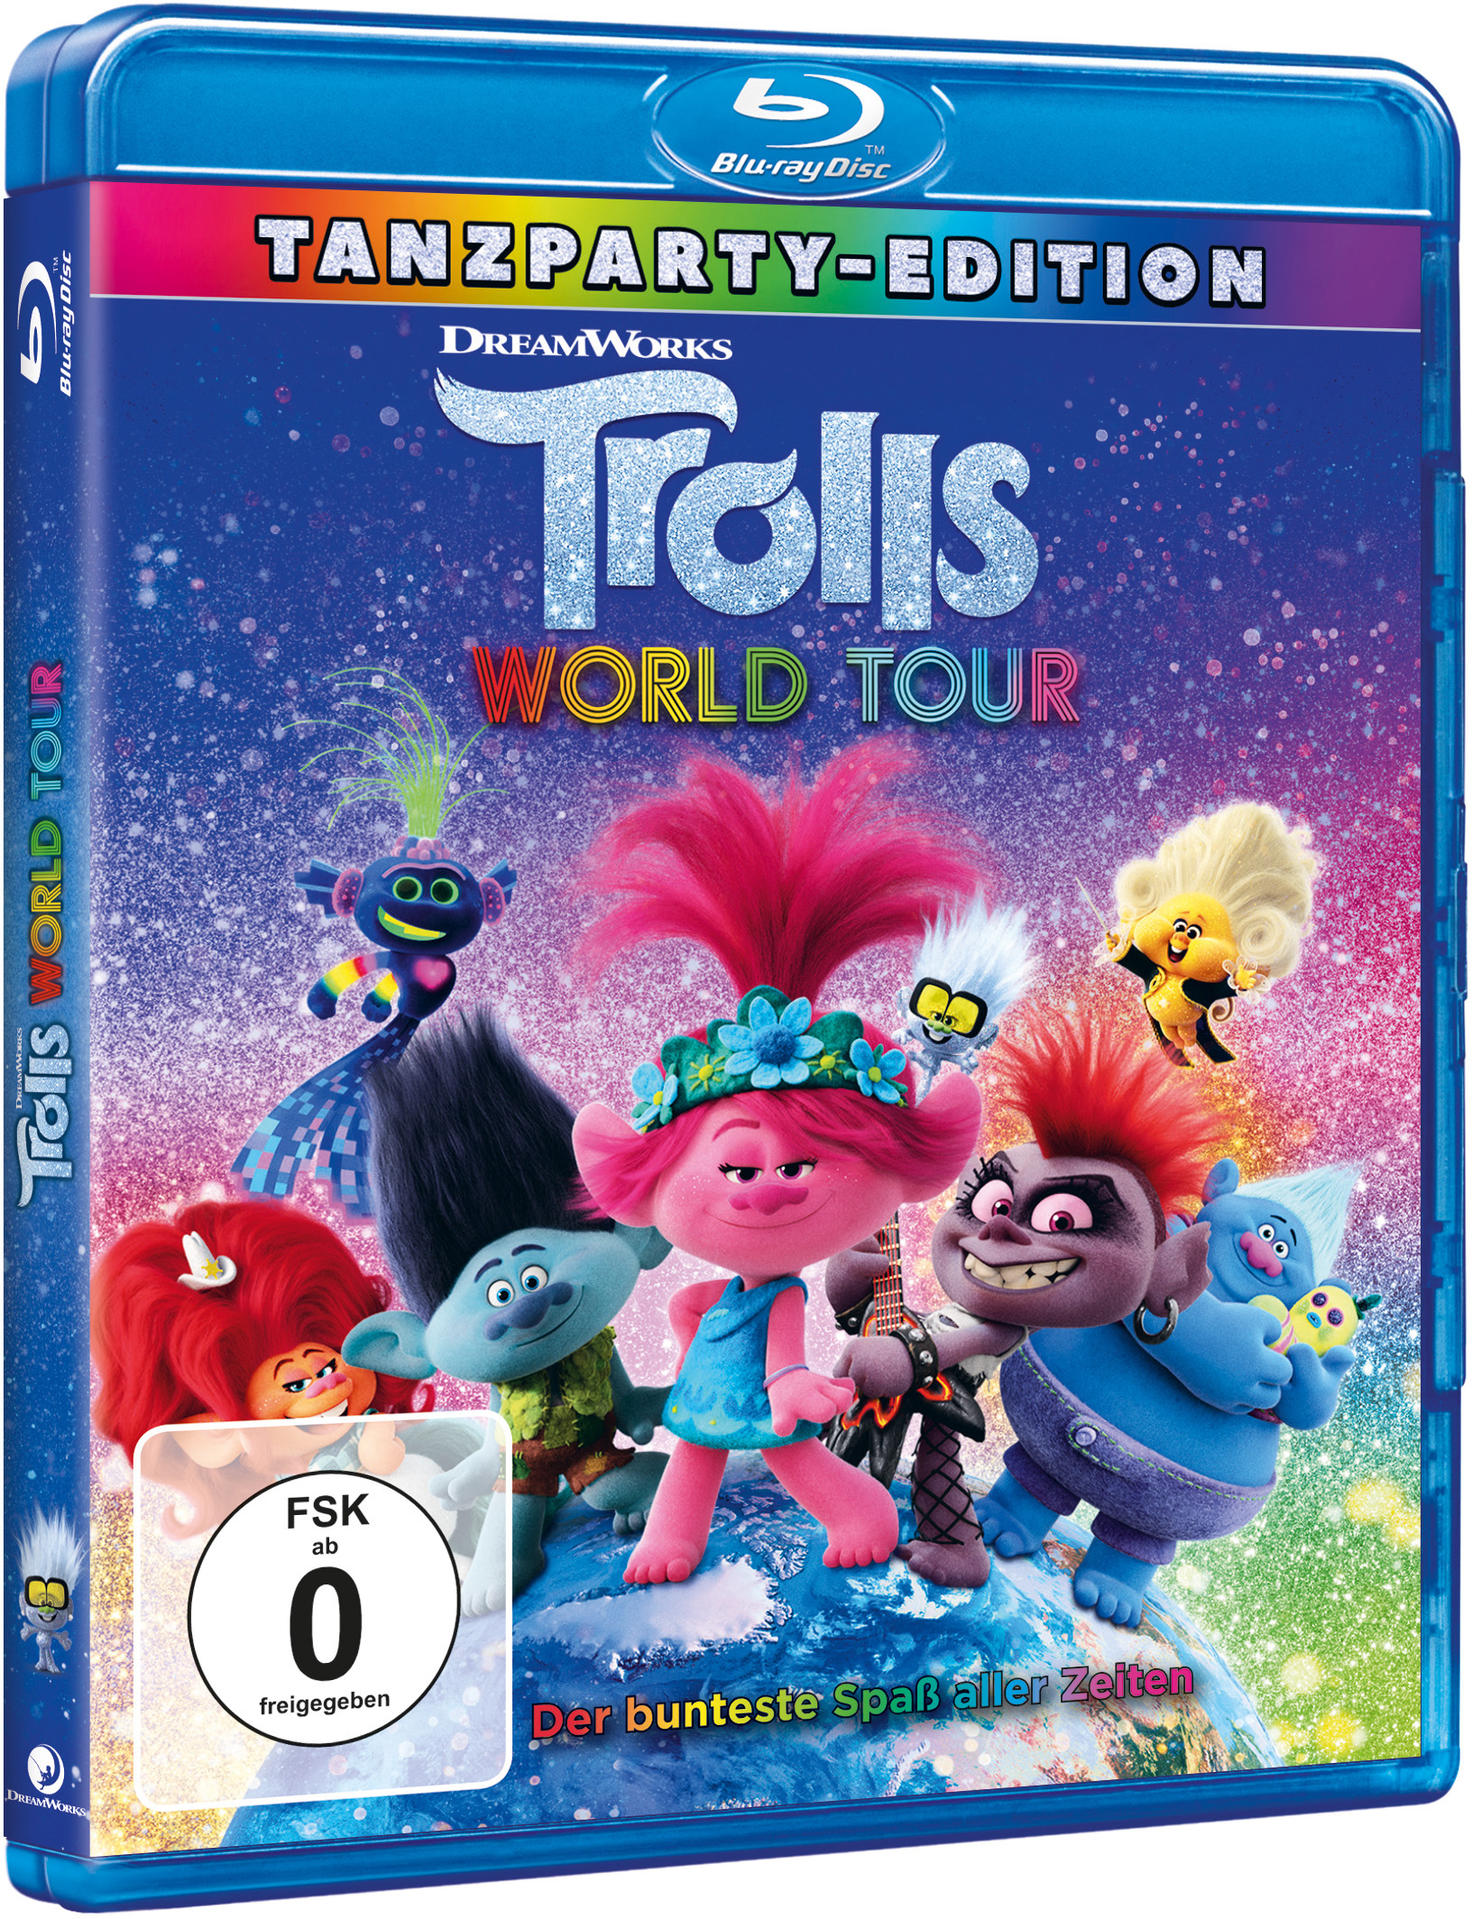 Blu-ray Tour Trolls Trolls - 2 World